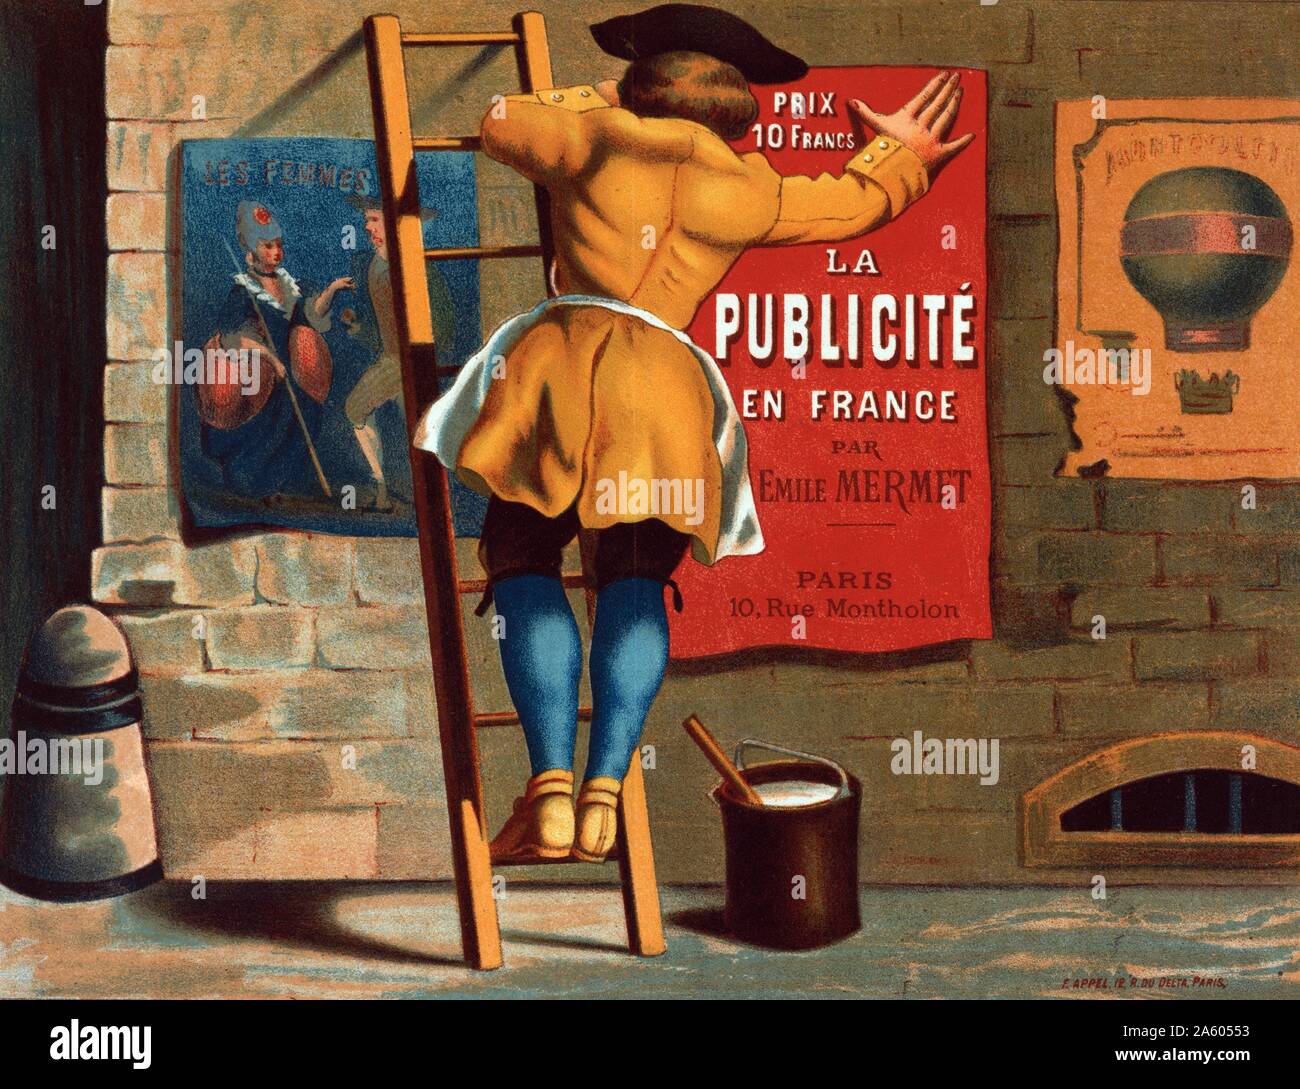 Mann, eine Werbung für 'La Publicité en France par Emile Mermet' auf eine Stadtmauer zwischen ein Poster von zwei Personen mit Untertiteln 'Les femmes" und ein Poster von einem 'Montgolfier" Heißluftballon Stockfoto